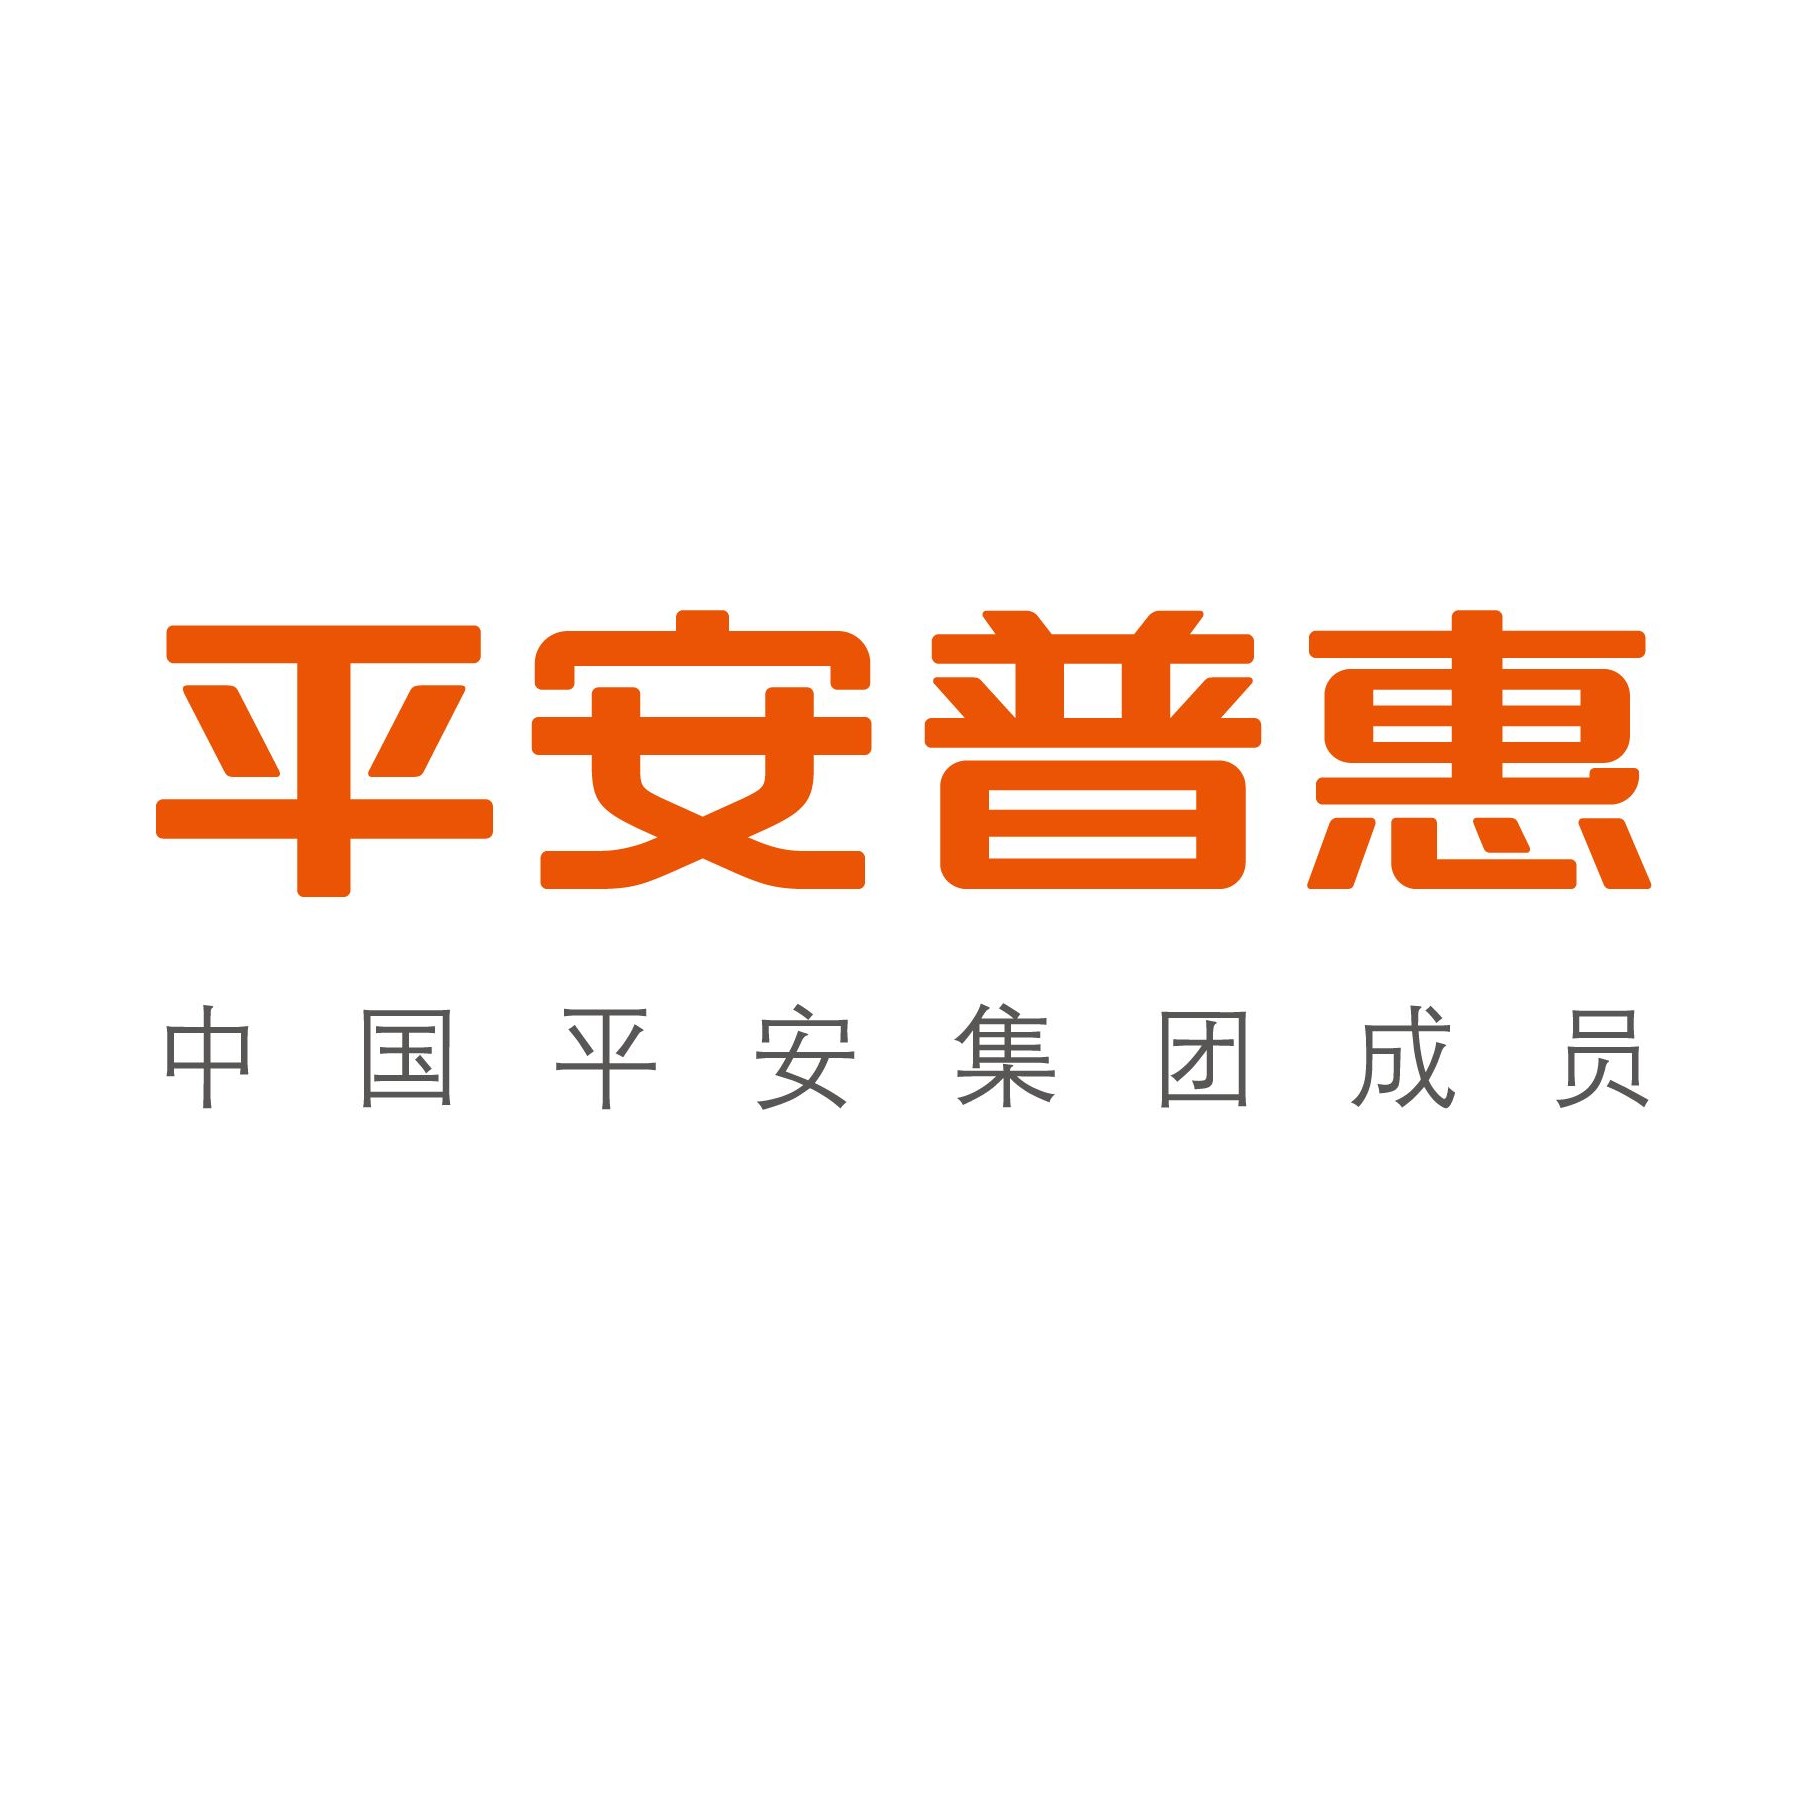 象征平安标志logo图片图片